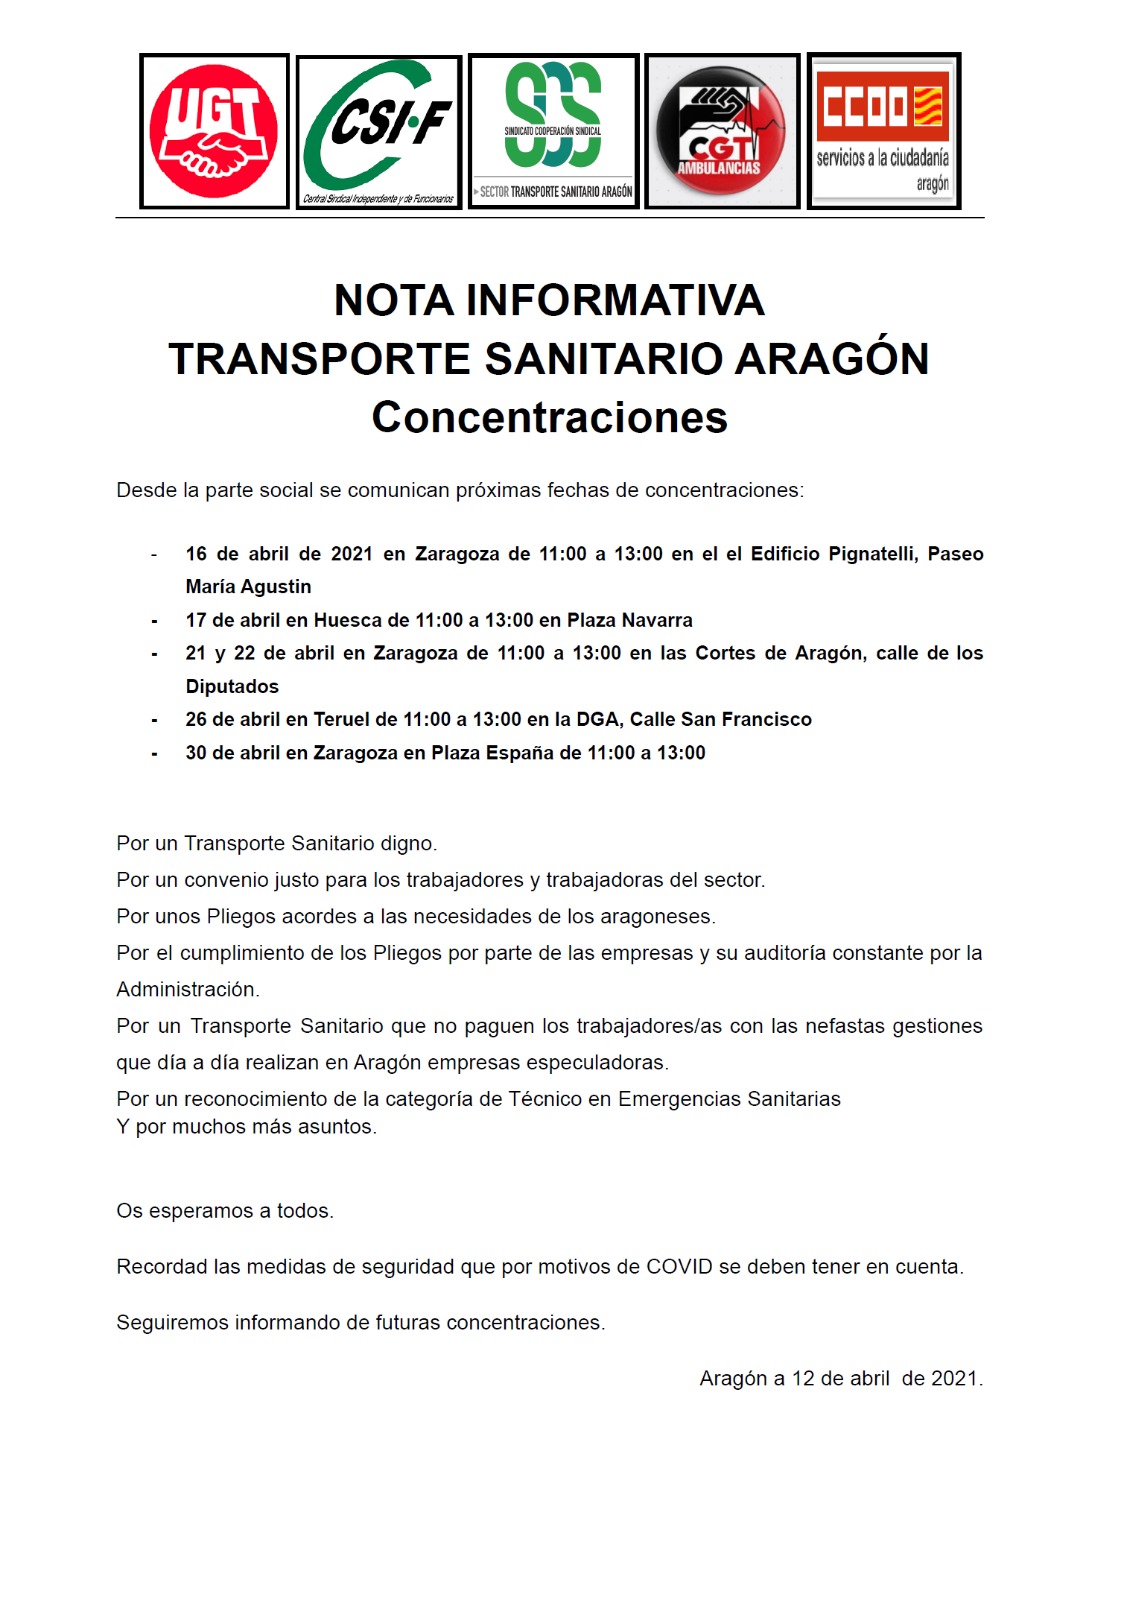 Huelga Indefinida en el Transporte Sanitario en Aragón